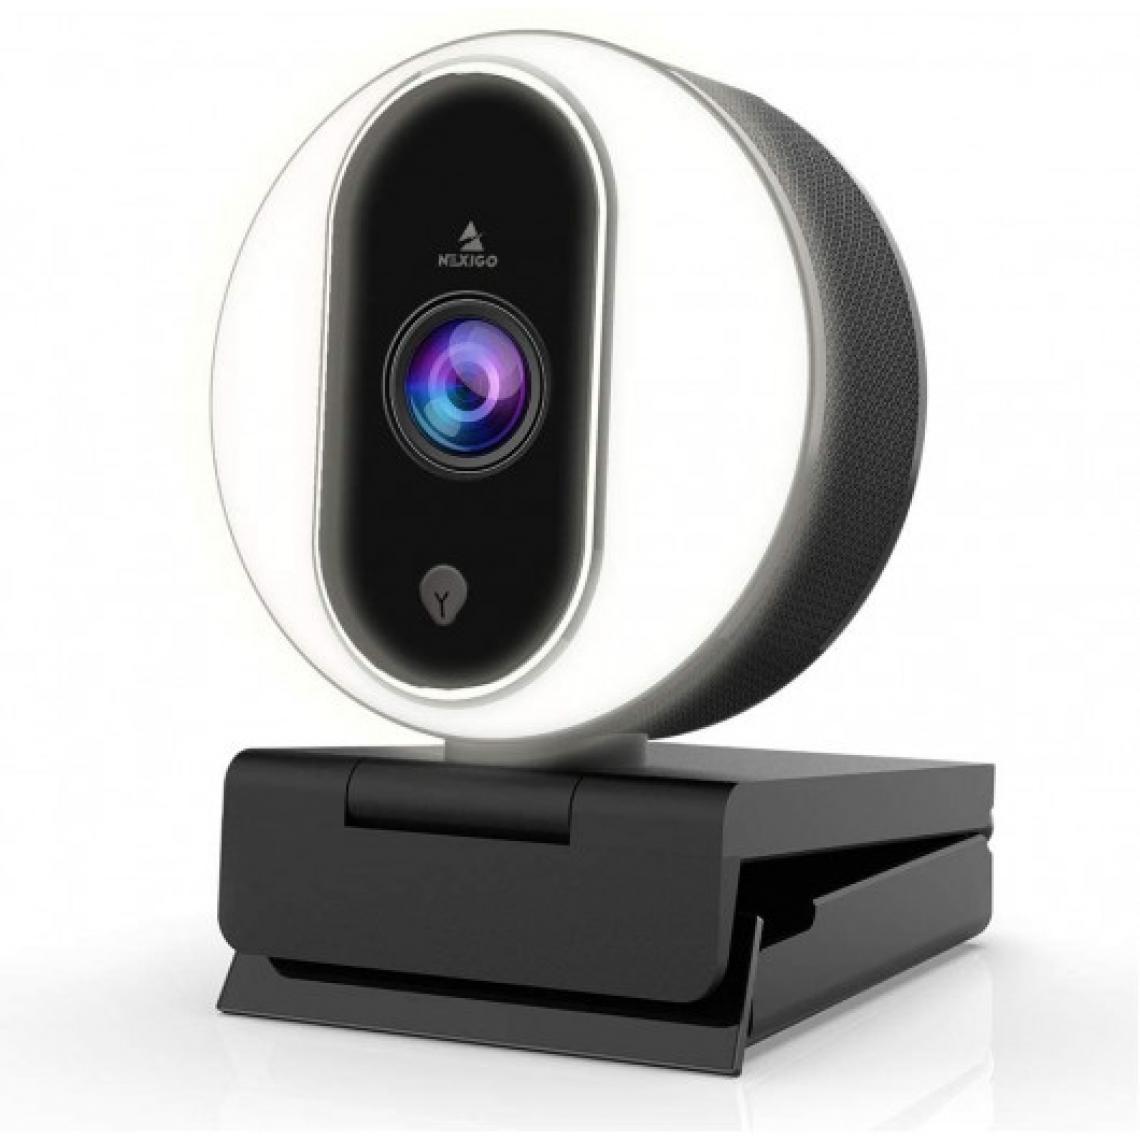 Ofs Selection - NexiGo N680E, la webcam lumineuse - Caméra de surveillance connectée